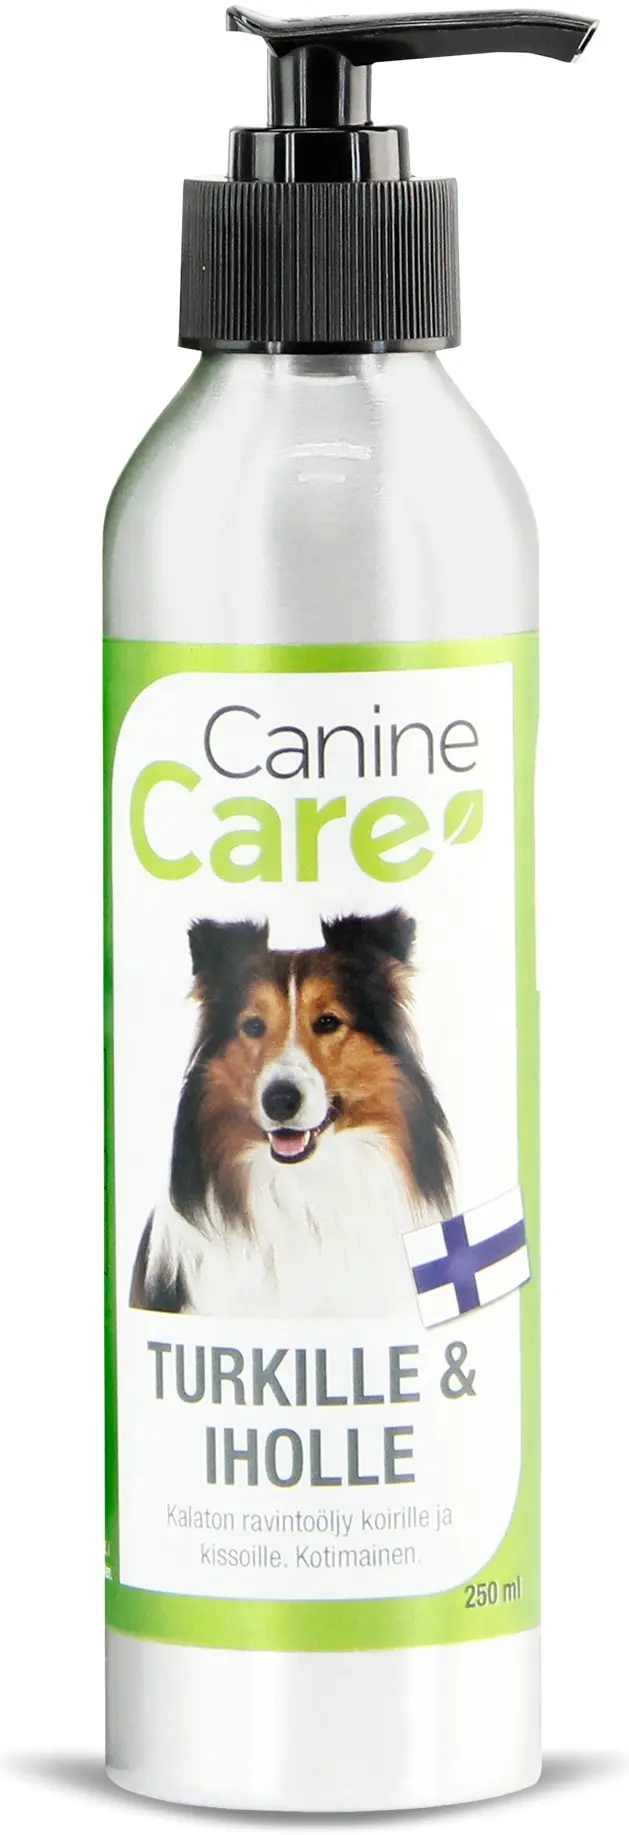 CanineCare koiran ravintolisä Turkille ja Iholle 250 ml